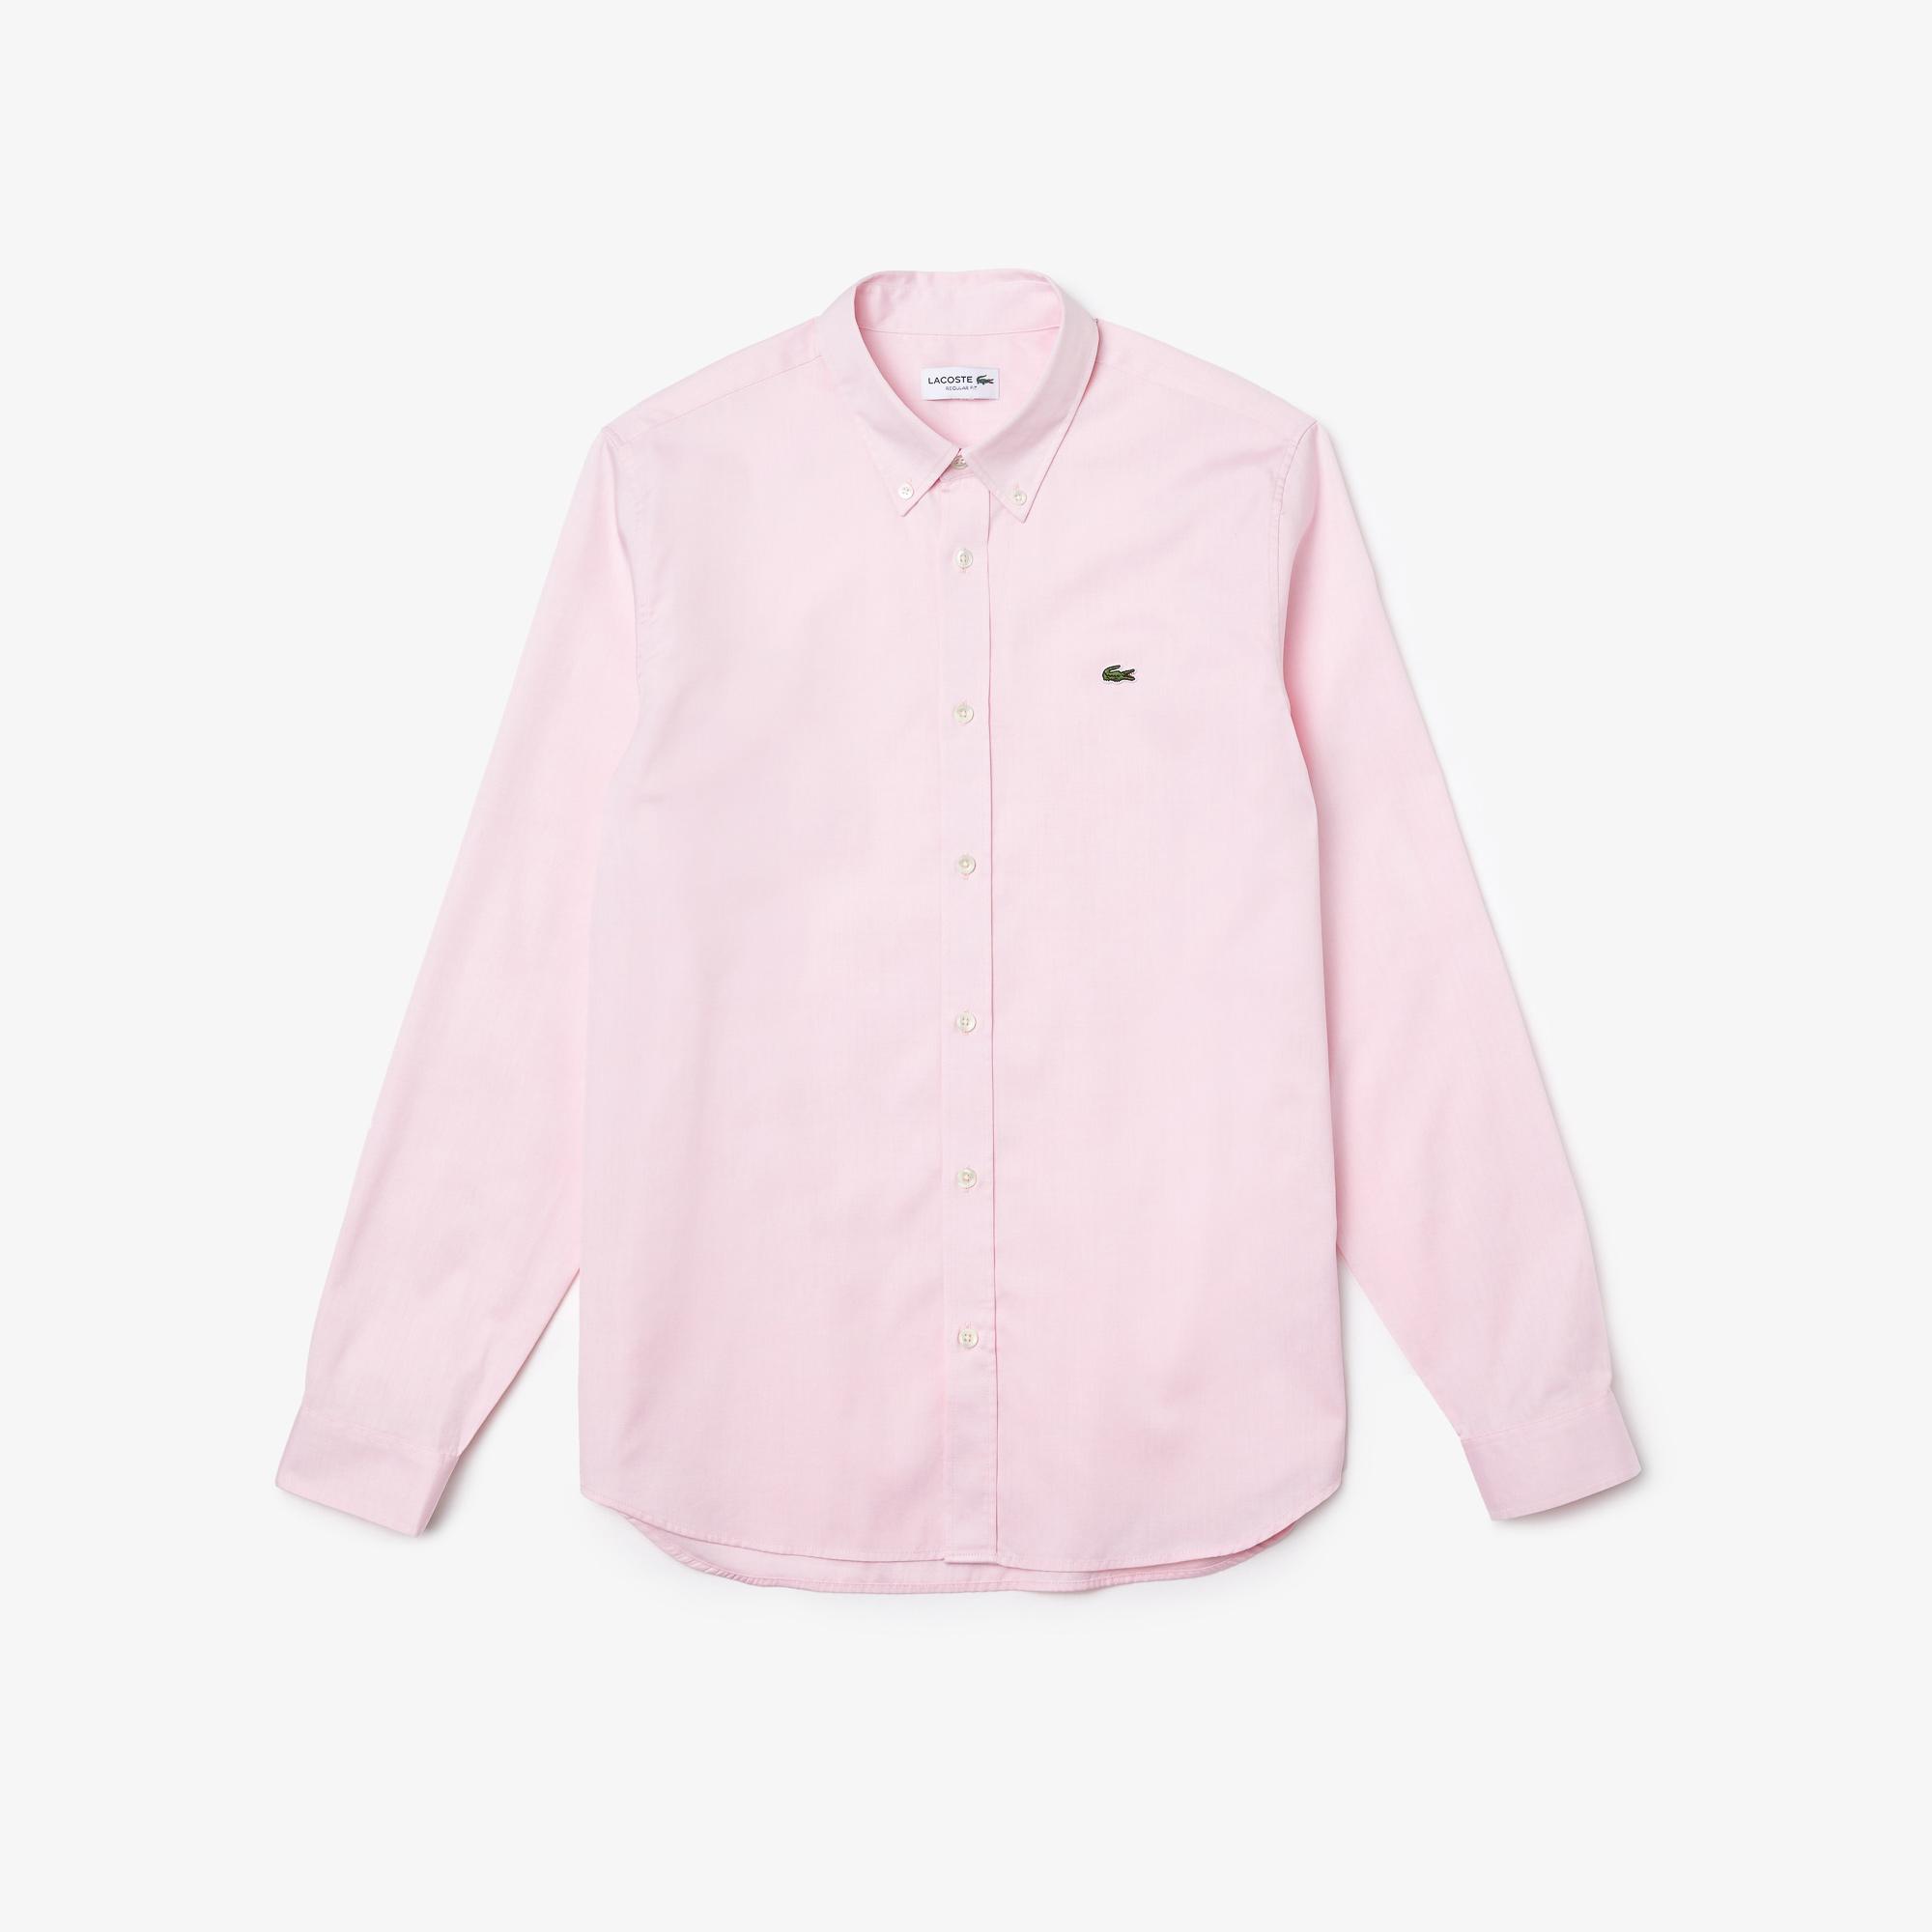 Lacoste Men's Regular Fit Premium Cotton Shirt